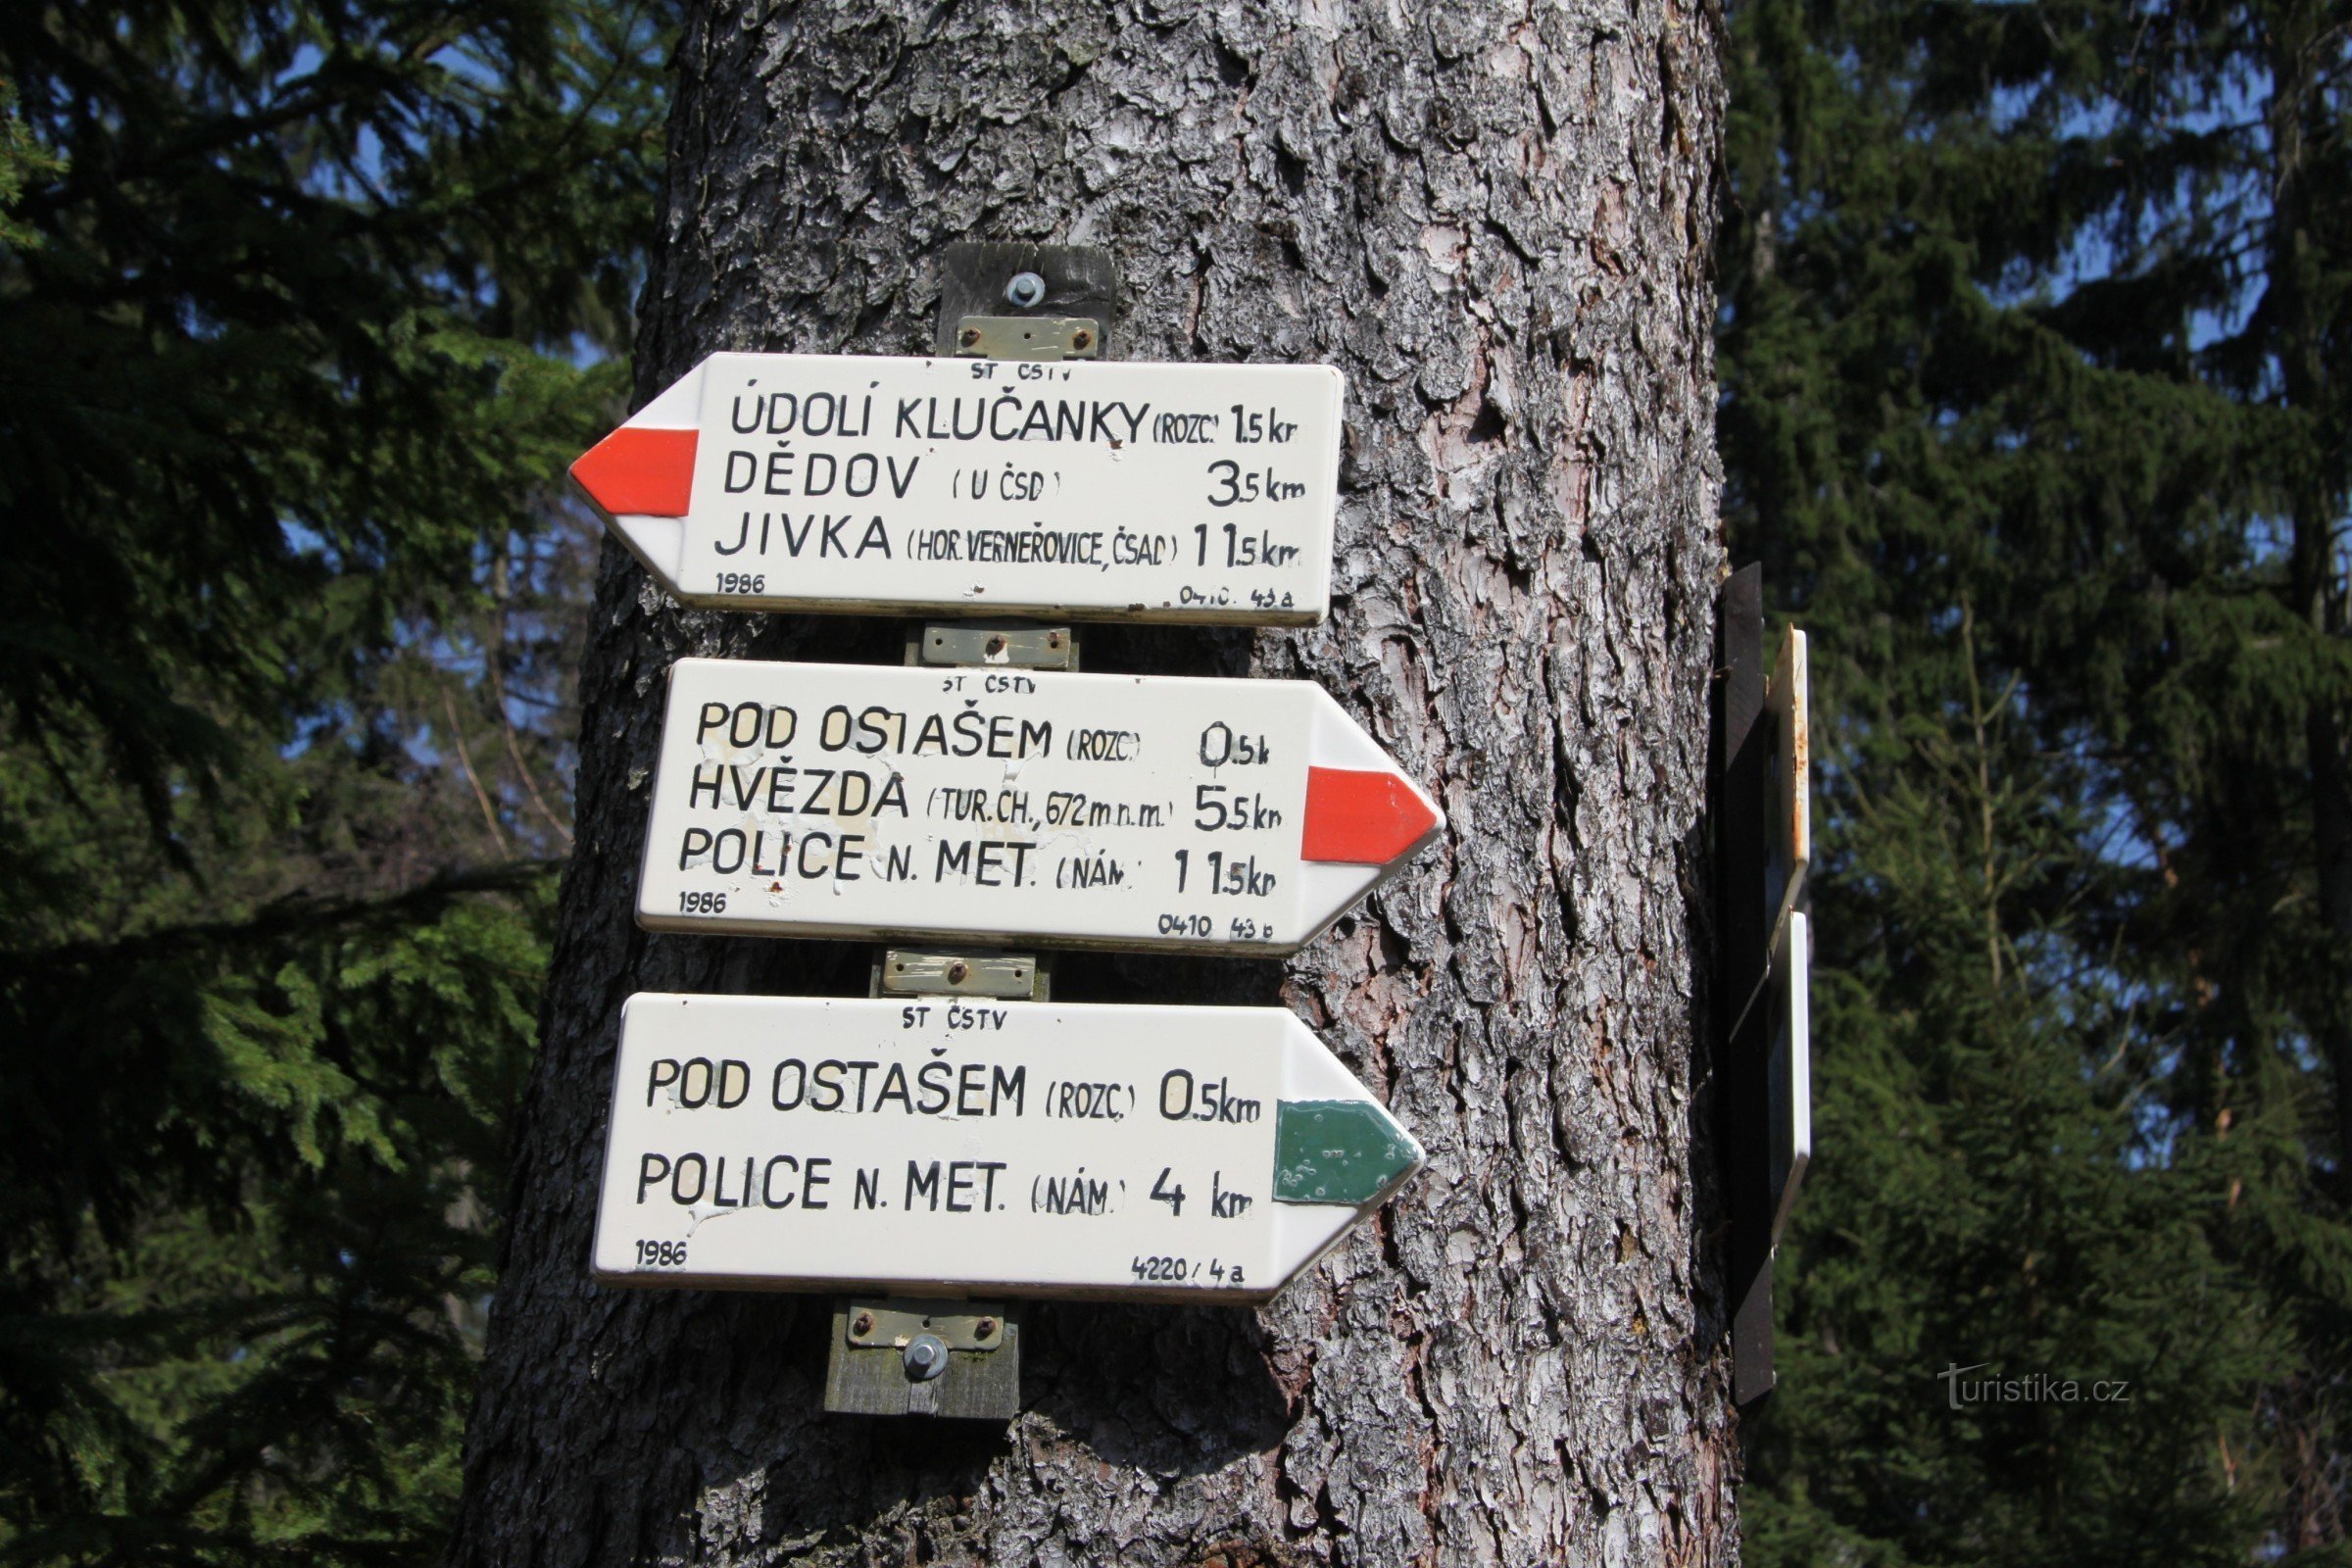 Placa de sinalização perto de Kočiče skal - Ostaš